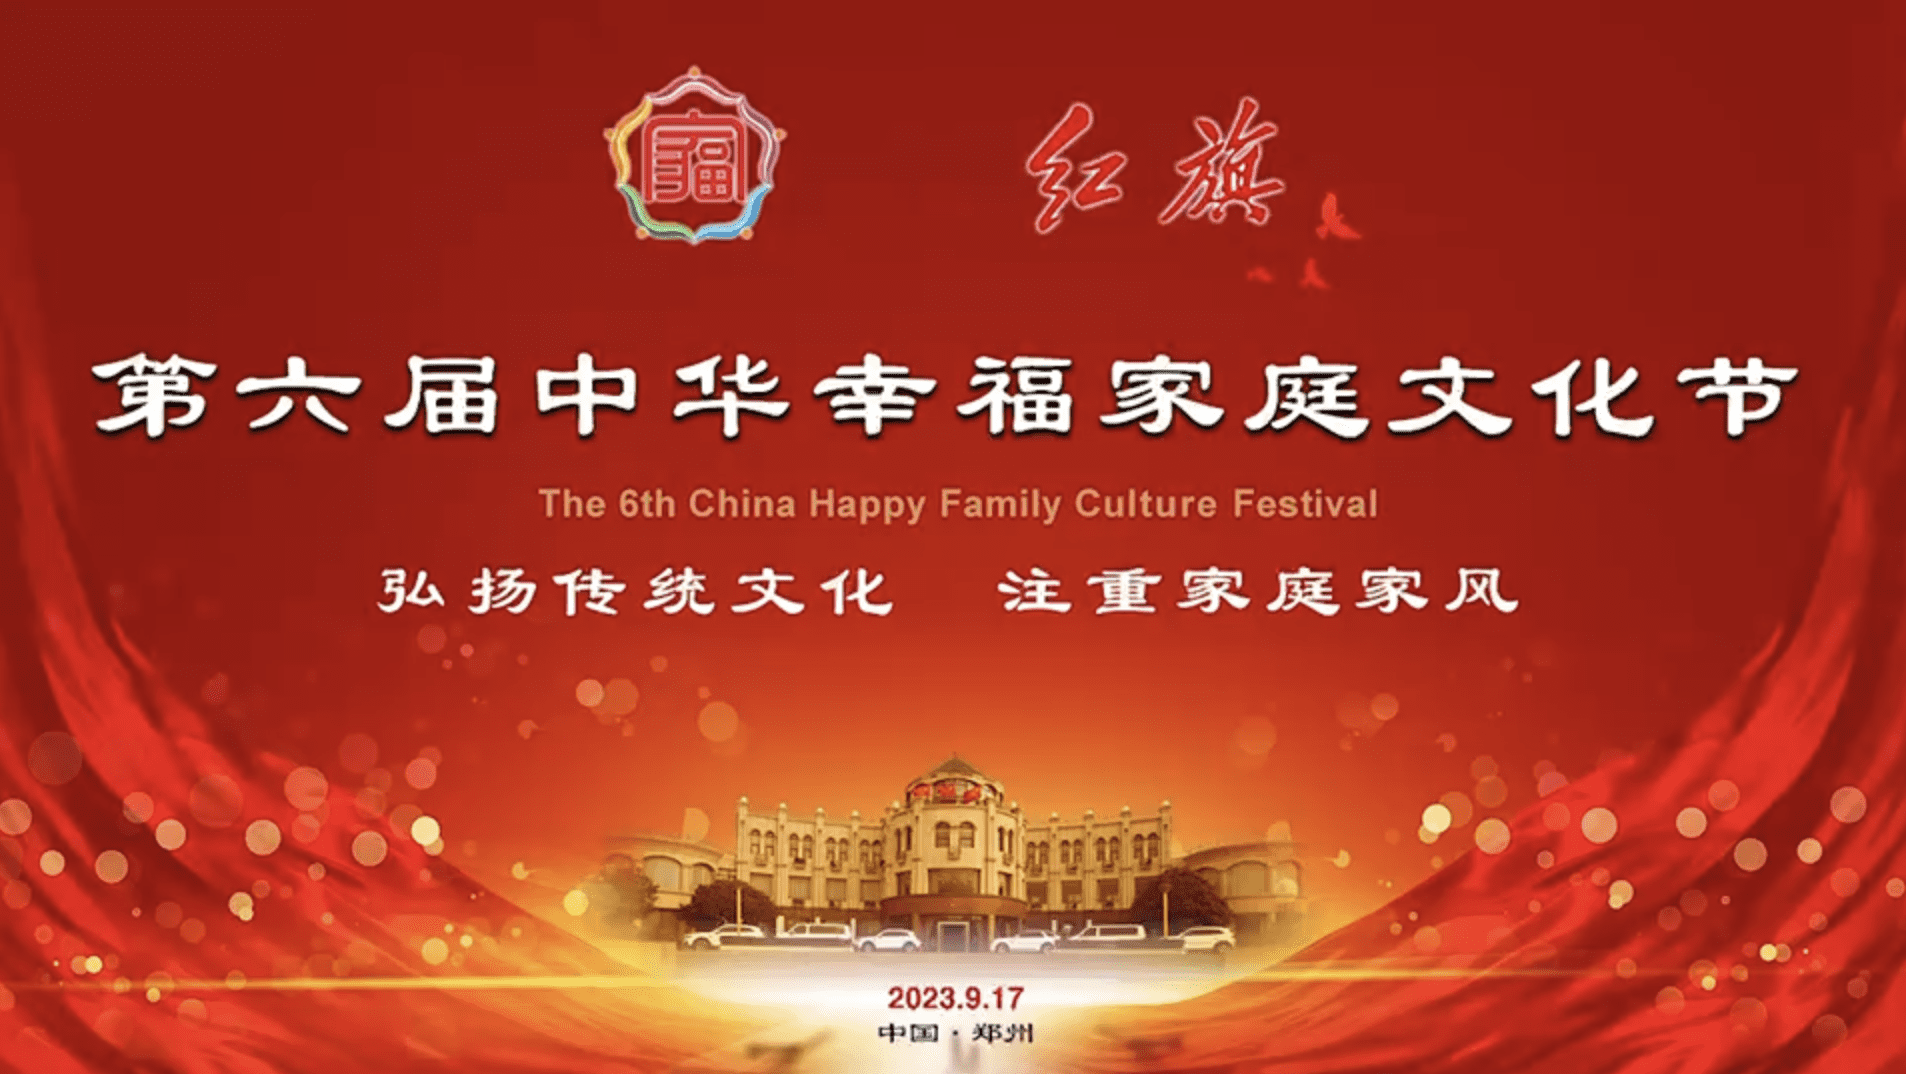 祝贺！第六届中华幸福家庭文化节圆满成功